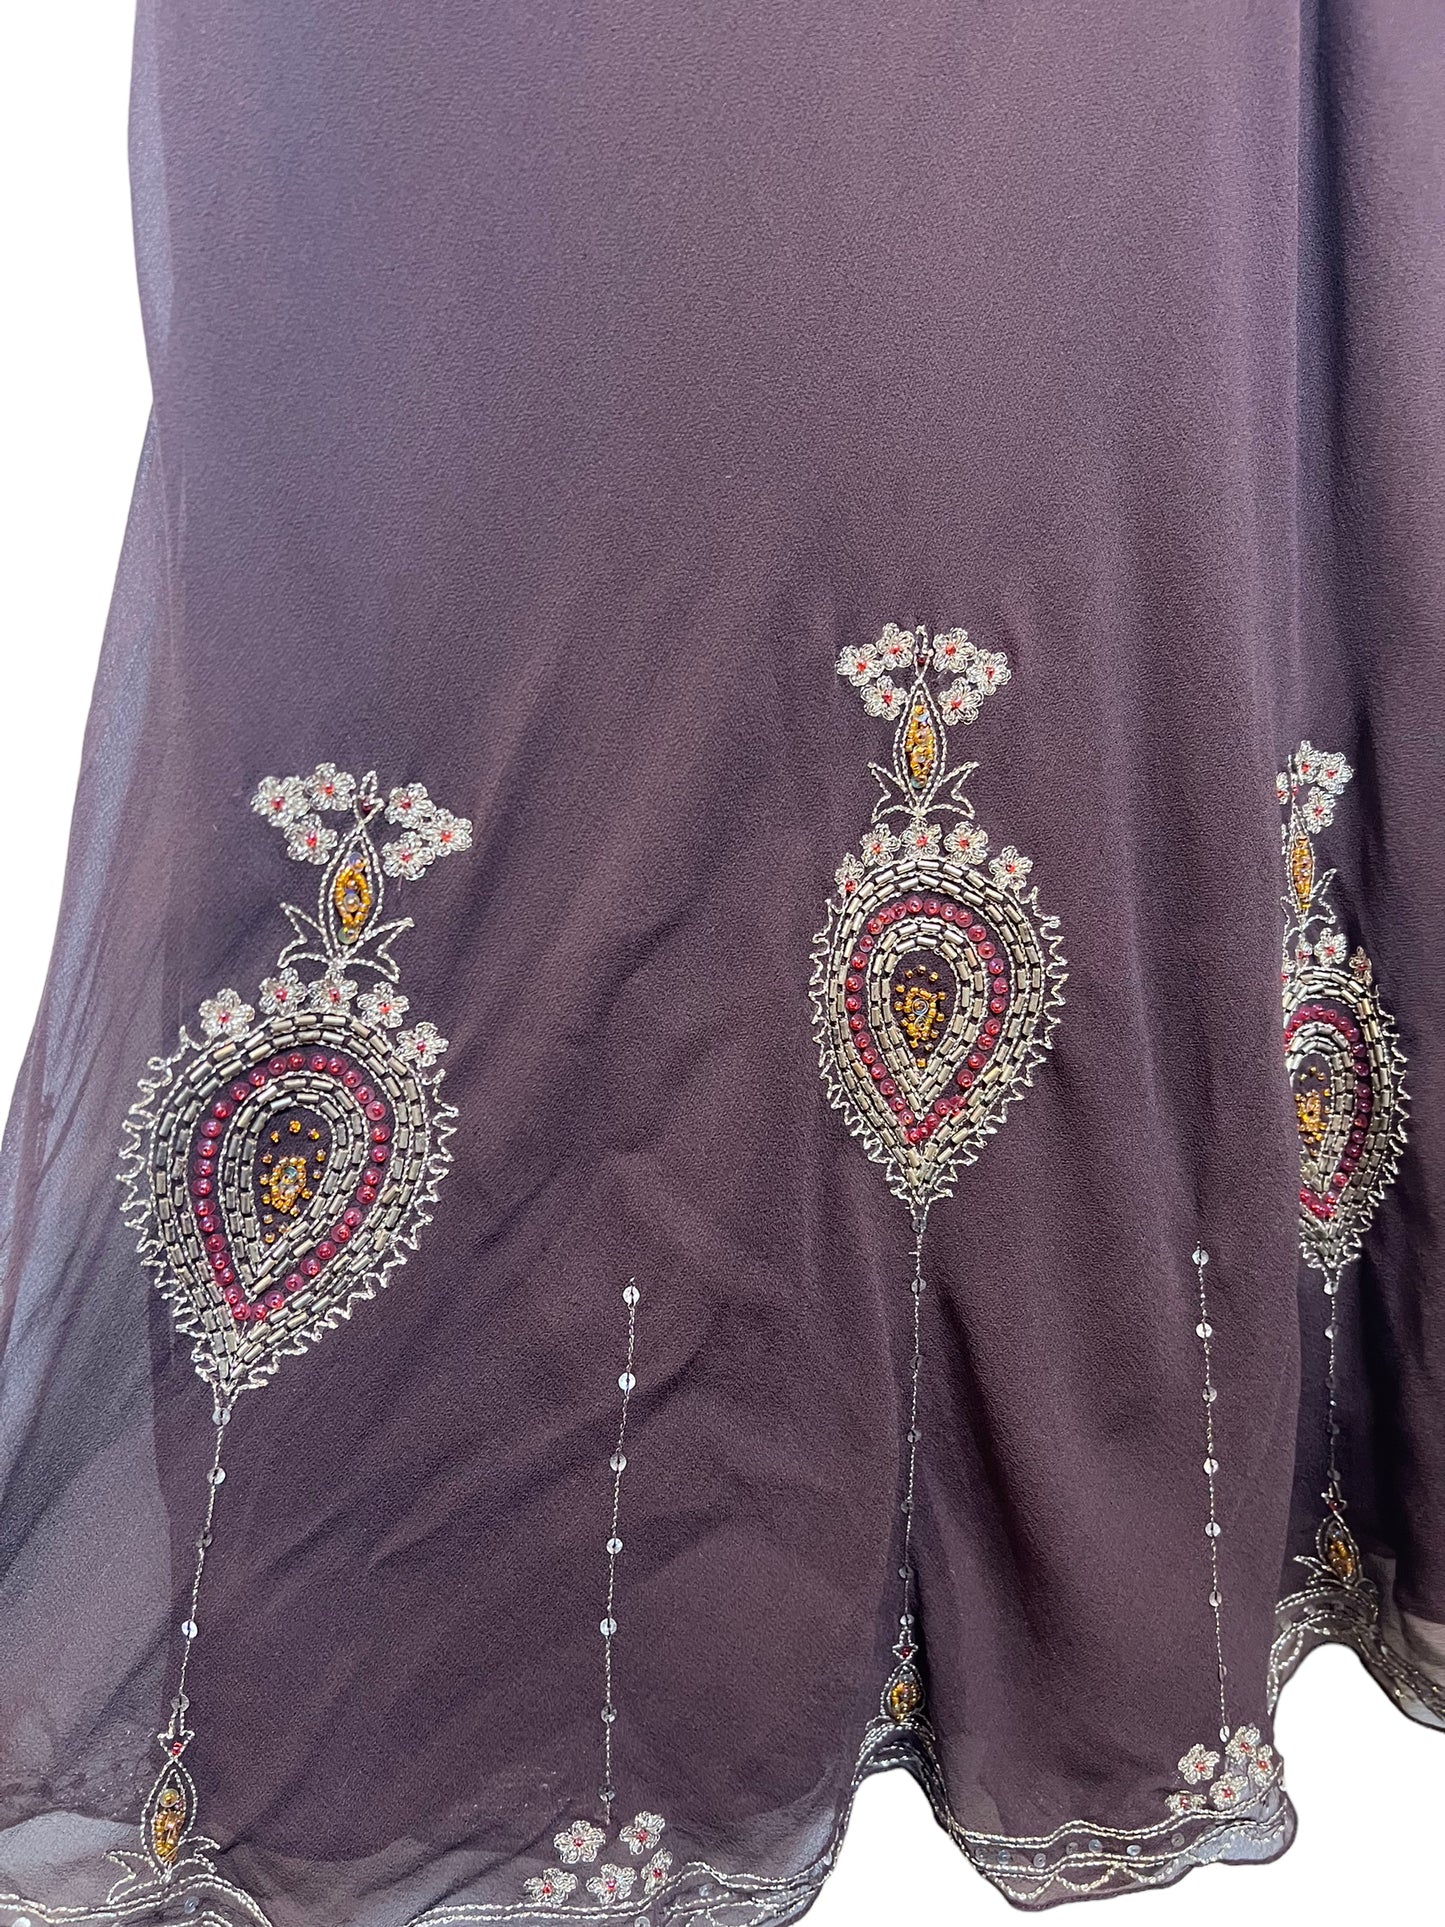 Monsoon Women’s Black Silk Bejewelled Dress (Size M)